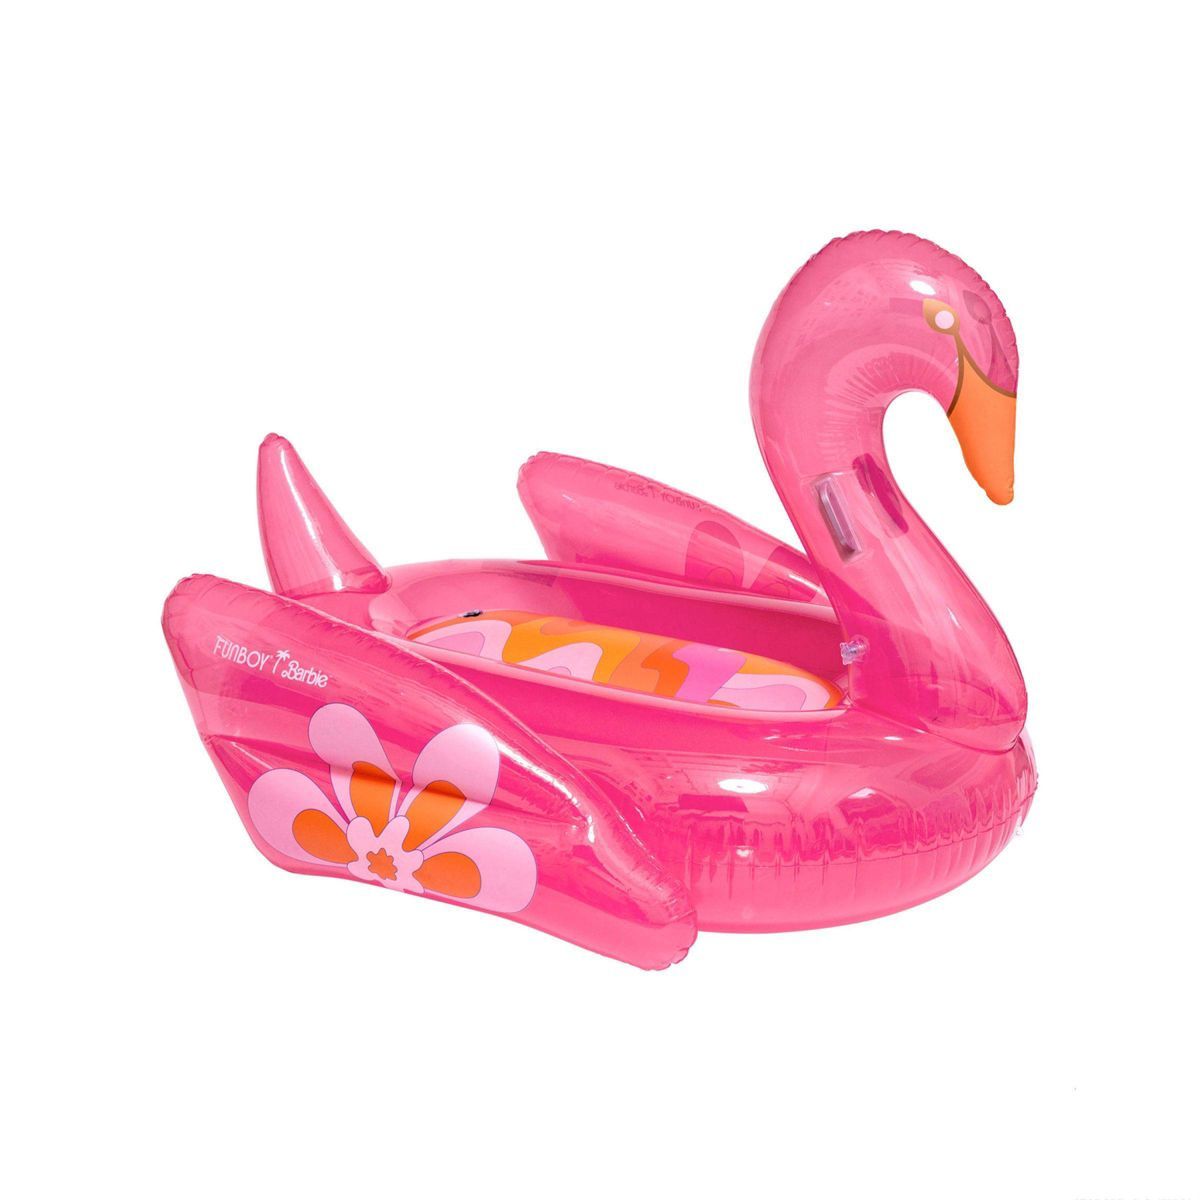 FUNBOY x Barbie Dream Swan Pool Float - Pink | Target